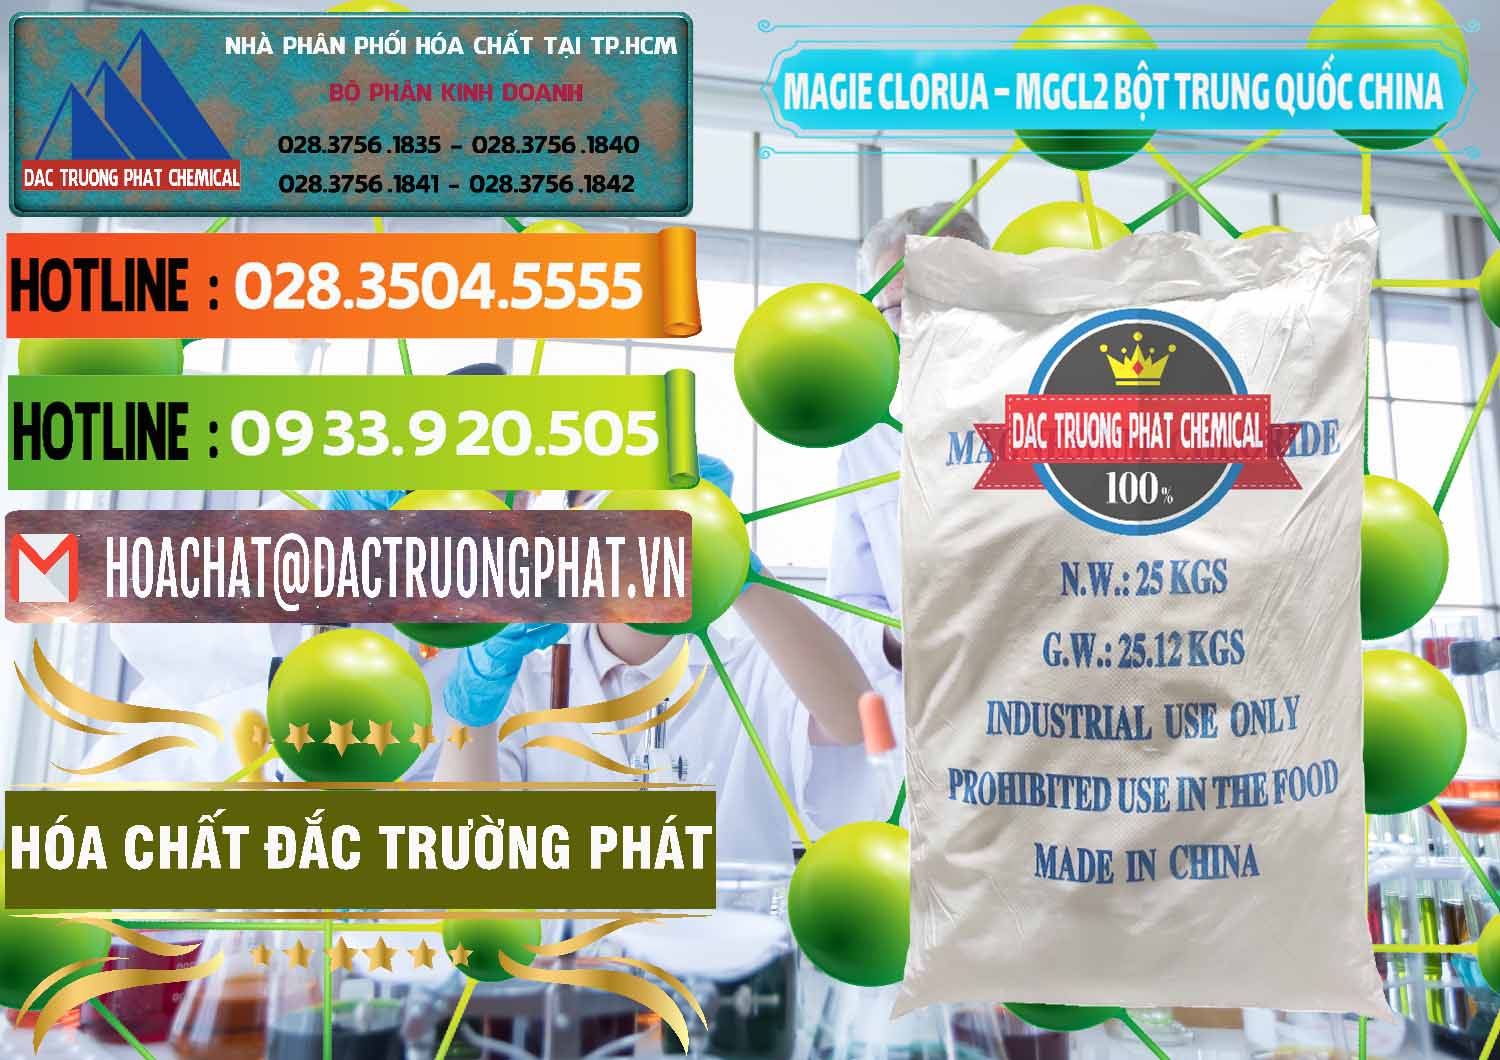 Nhà phân phối ( bán ) Magie Clorua – MGCL2 96% Dạng Bột Bao Chữ Xanh Trung Quốc China - 0207 - Nơi phân phối & cung cấp hóa chất tại TP.HCM - cungcaphoachat.com.vn